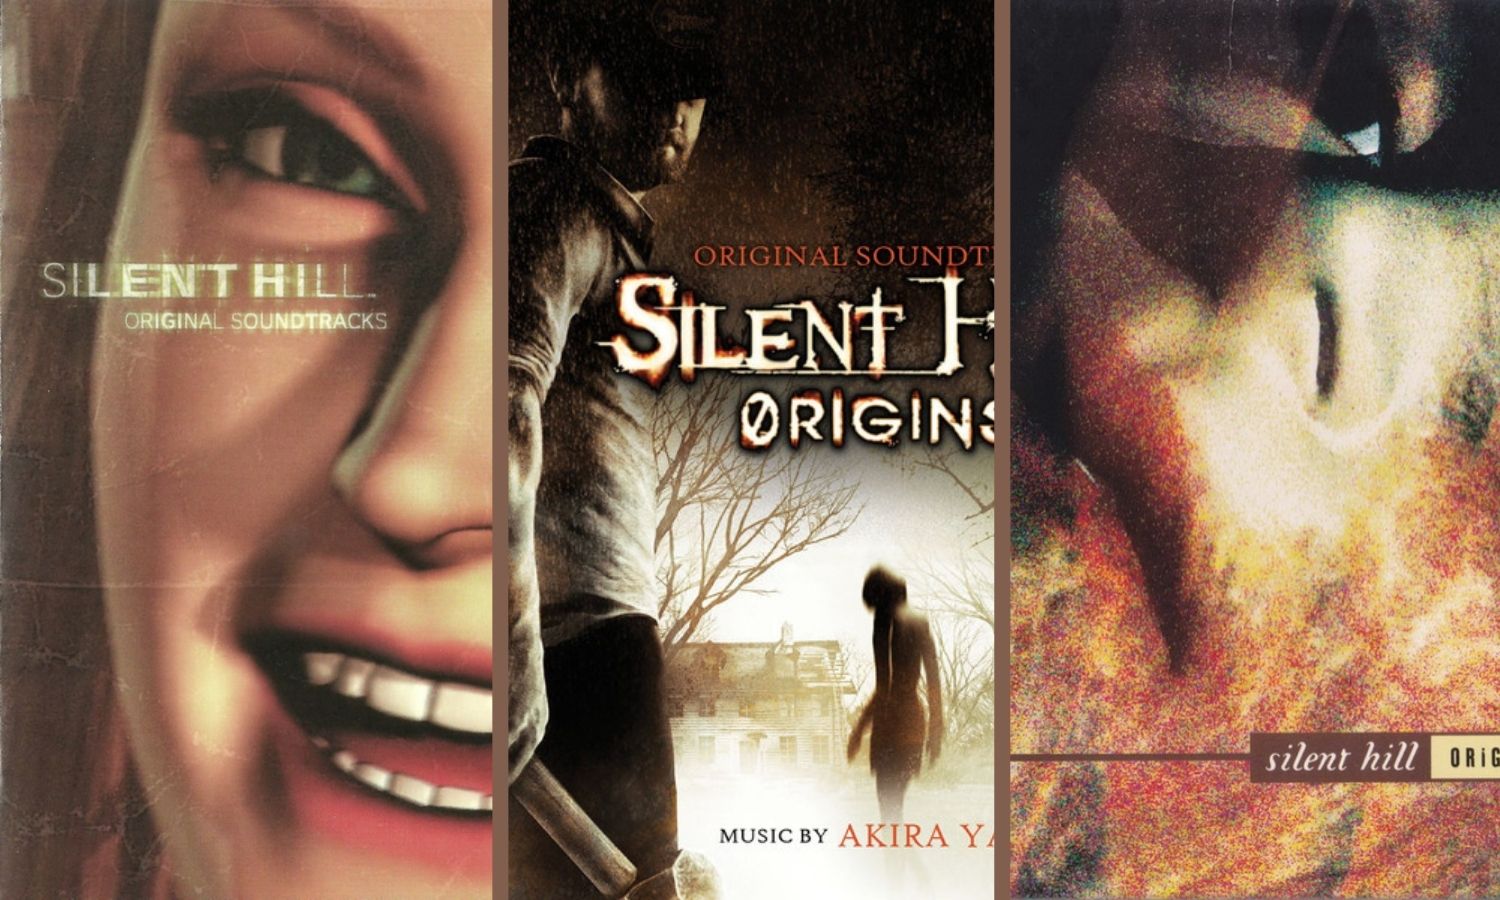 The Composer of Silent Hill: Akira Yamaoka